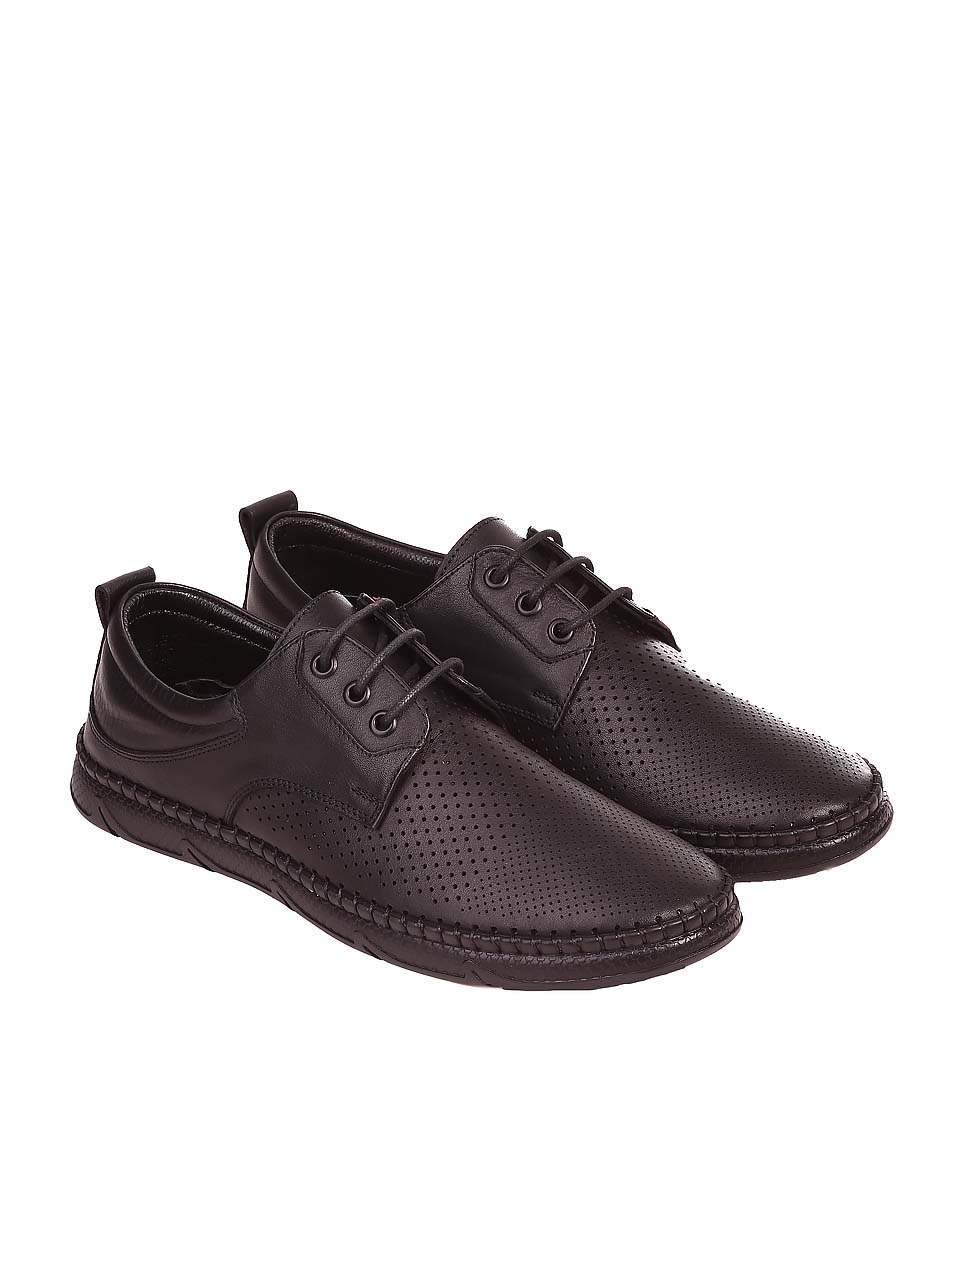 Ежедневни мъжки обувки от естествена кожа 7AT-24383 black